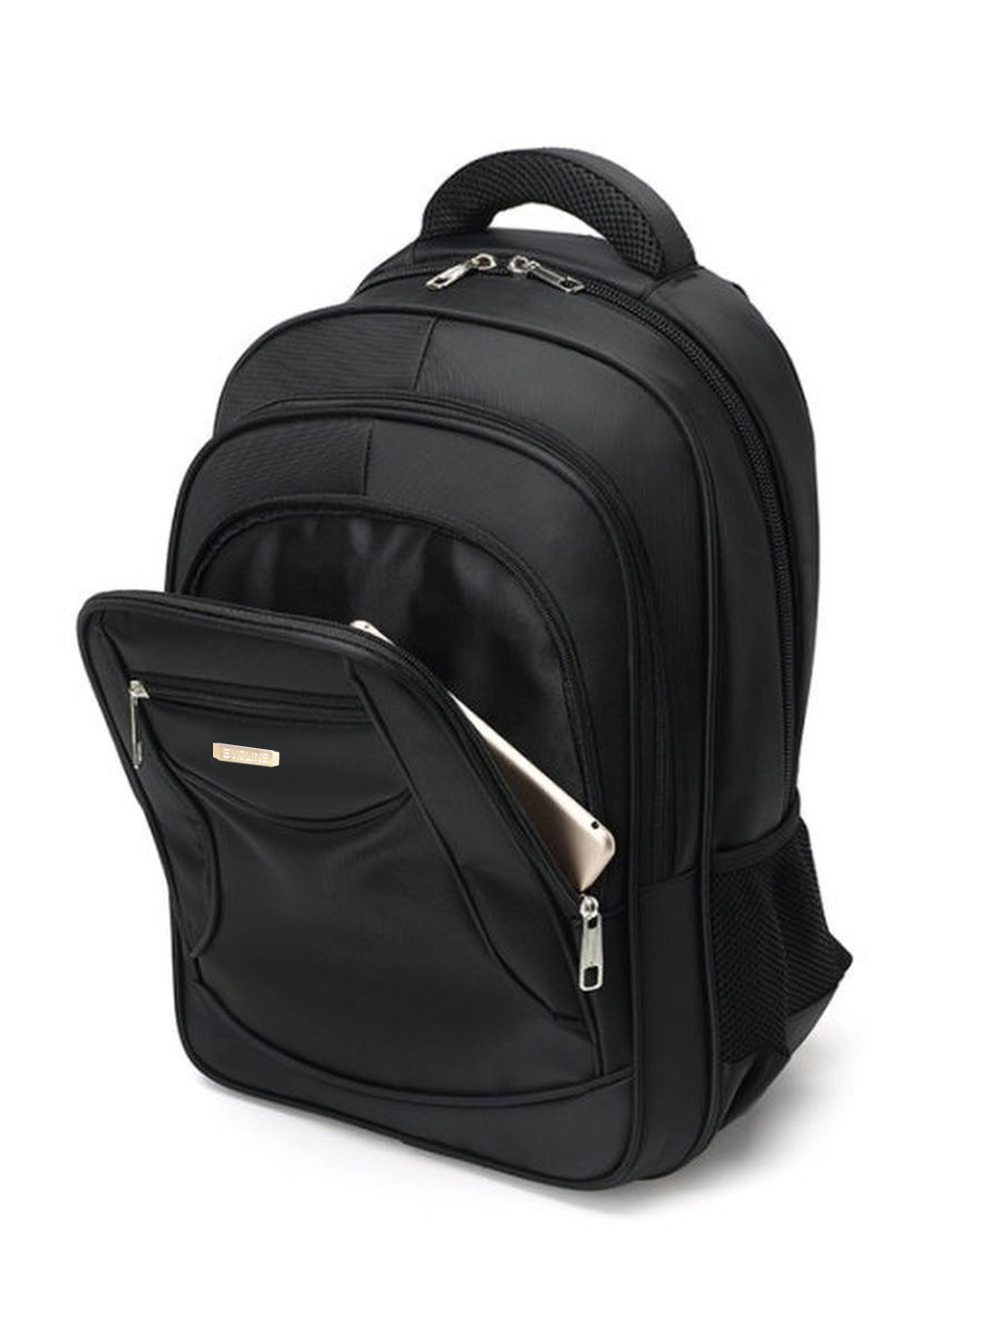 Рюкзак школьный Evoline Большой черный EVO-150-1 - фото 3